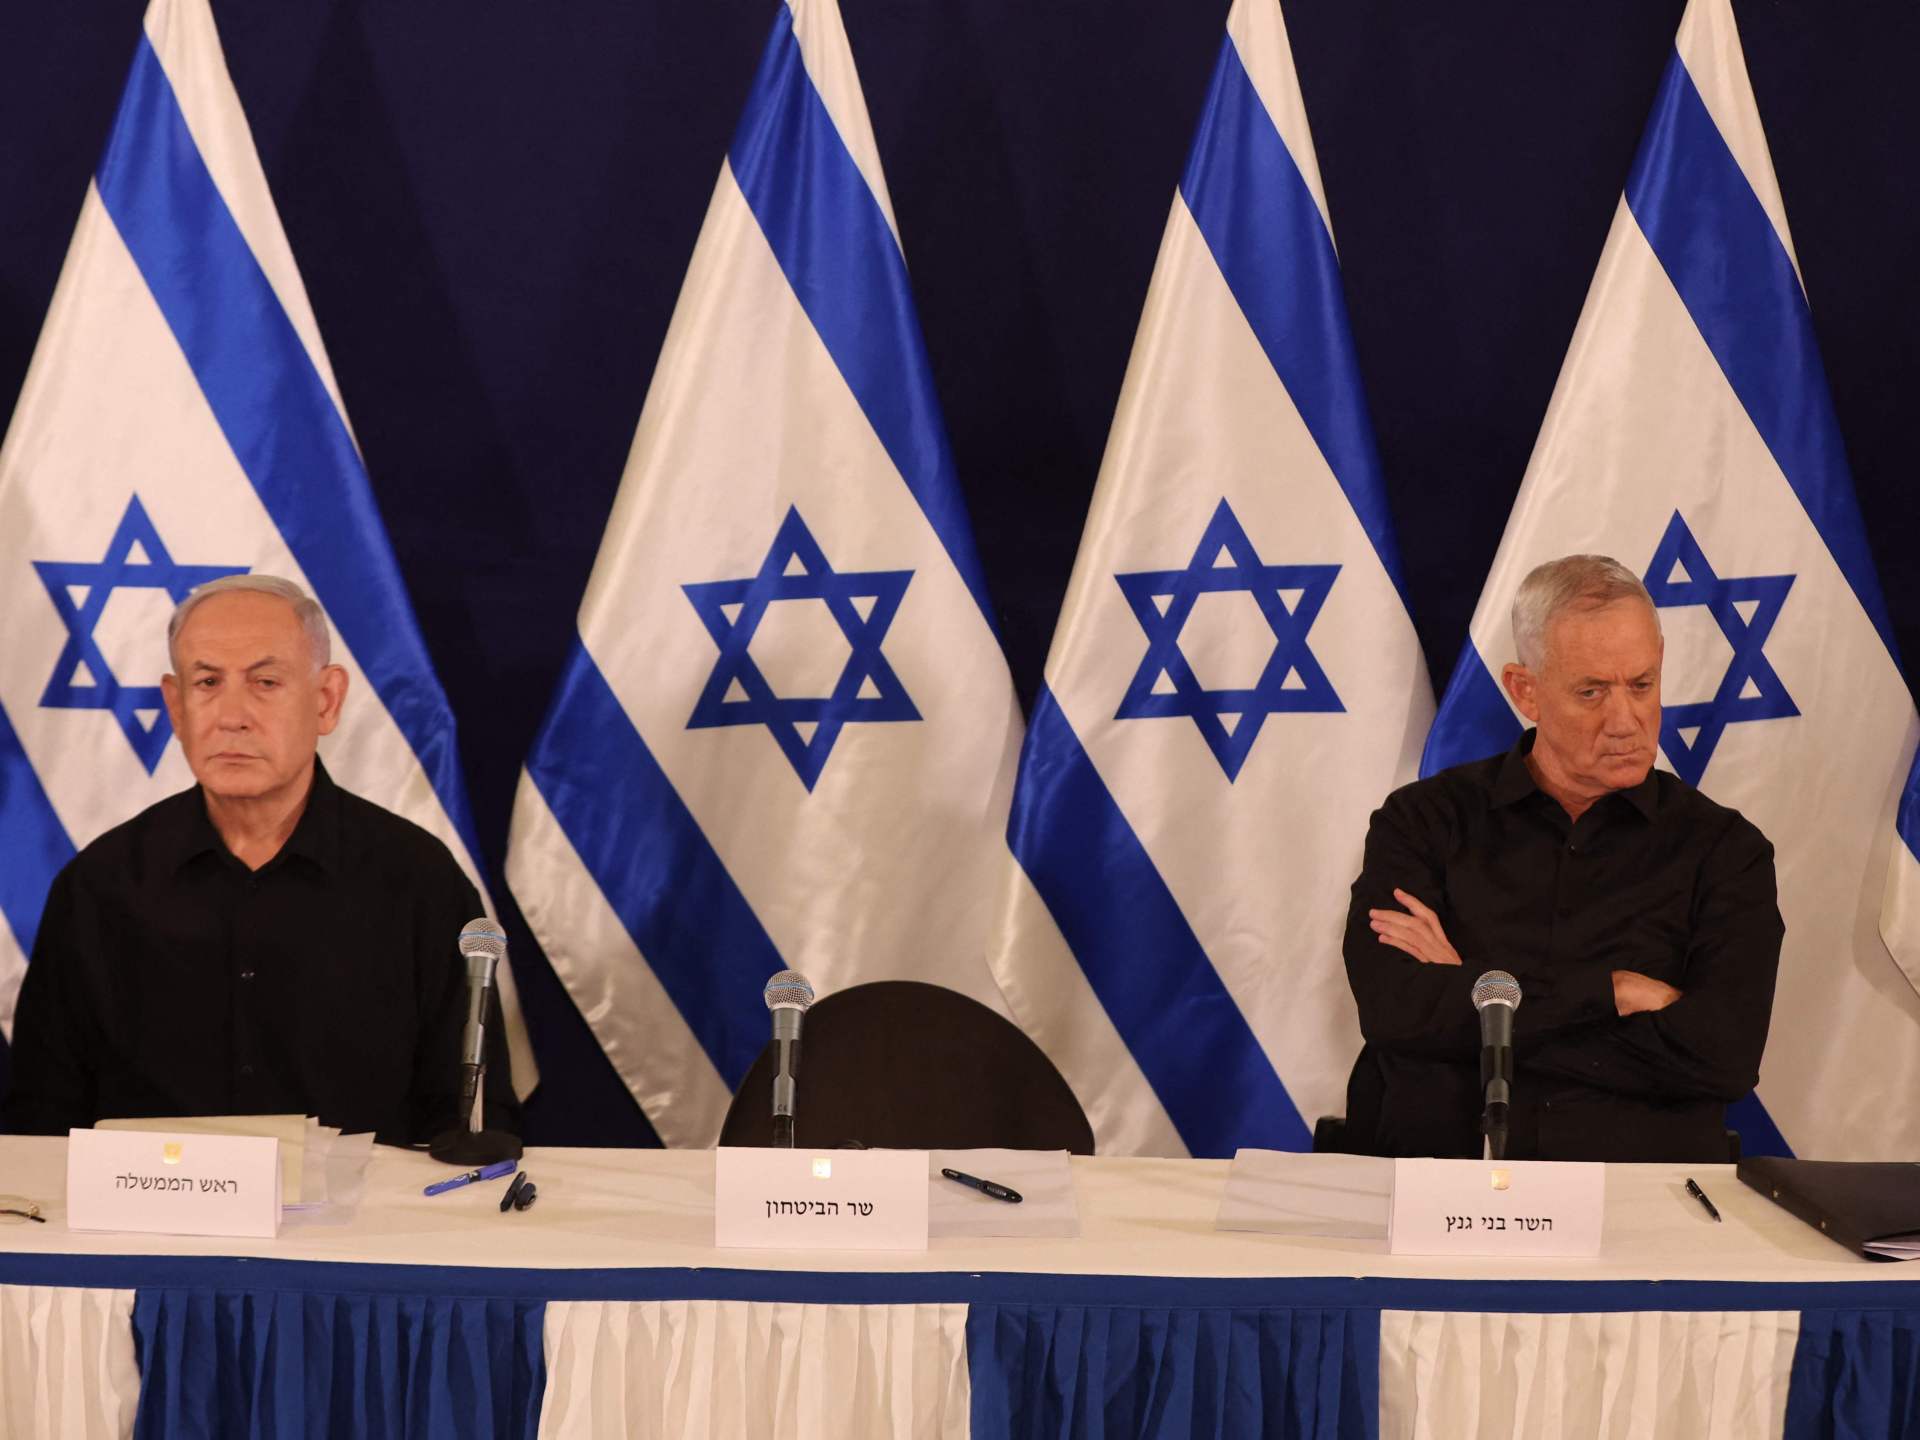 توقعات إسرائيلية بانسحاب حزب غانتس من حكومة نتنياهو | أخبار – البوكس نيوز